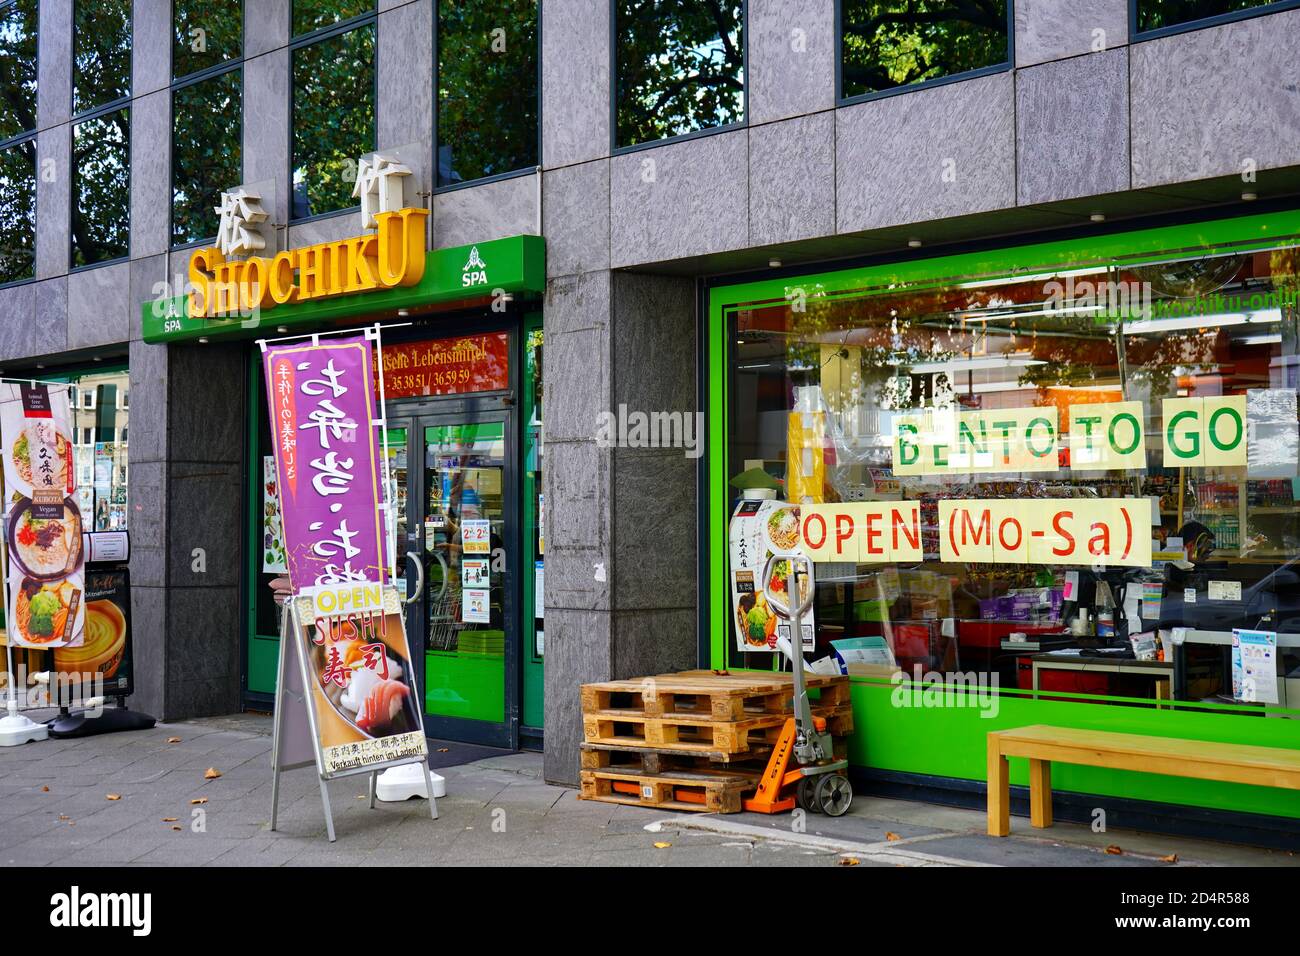 Das Lebensmittelgeschäft 'Shochiku' im beliebten japanischen Viertel in der Immermannstraße in Düsseldorf. Stockfoto